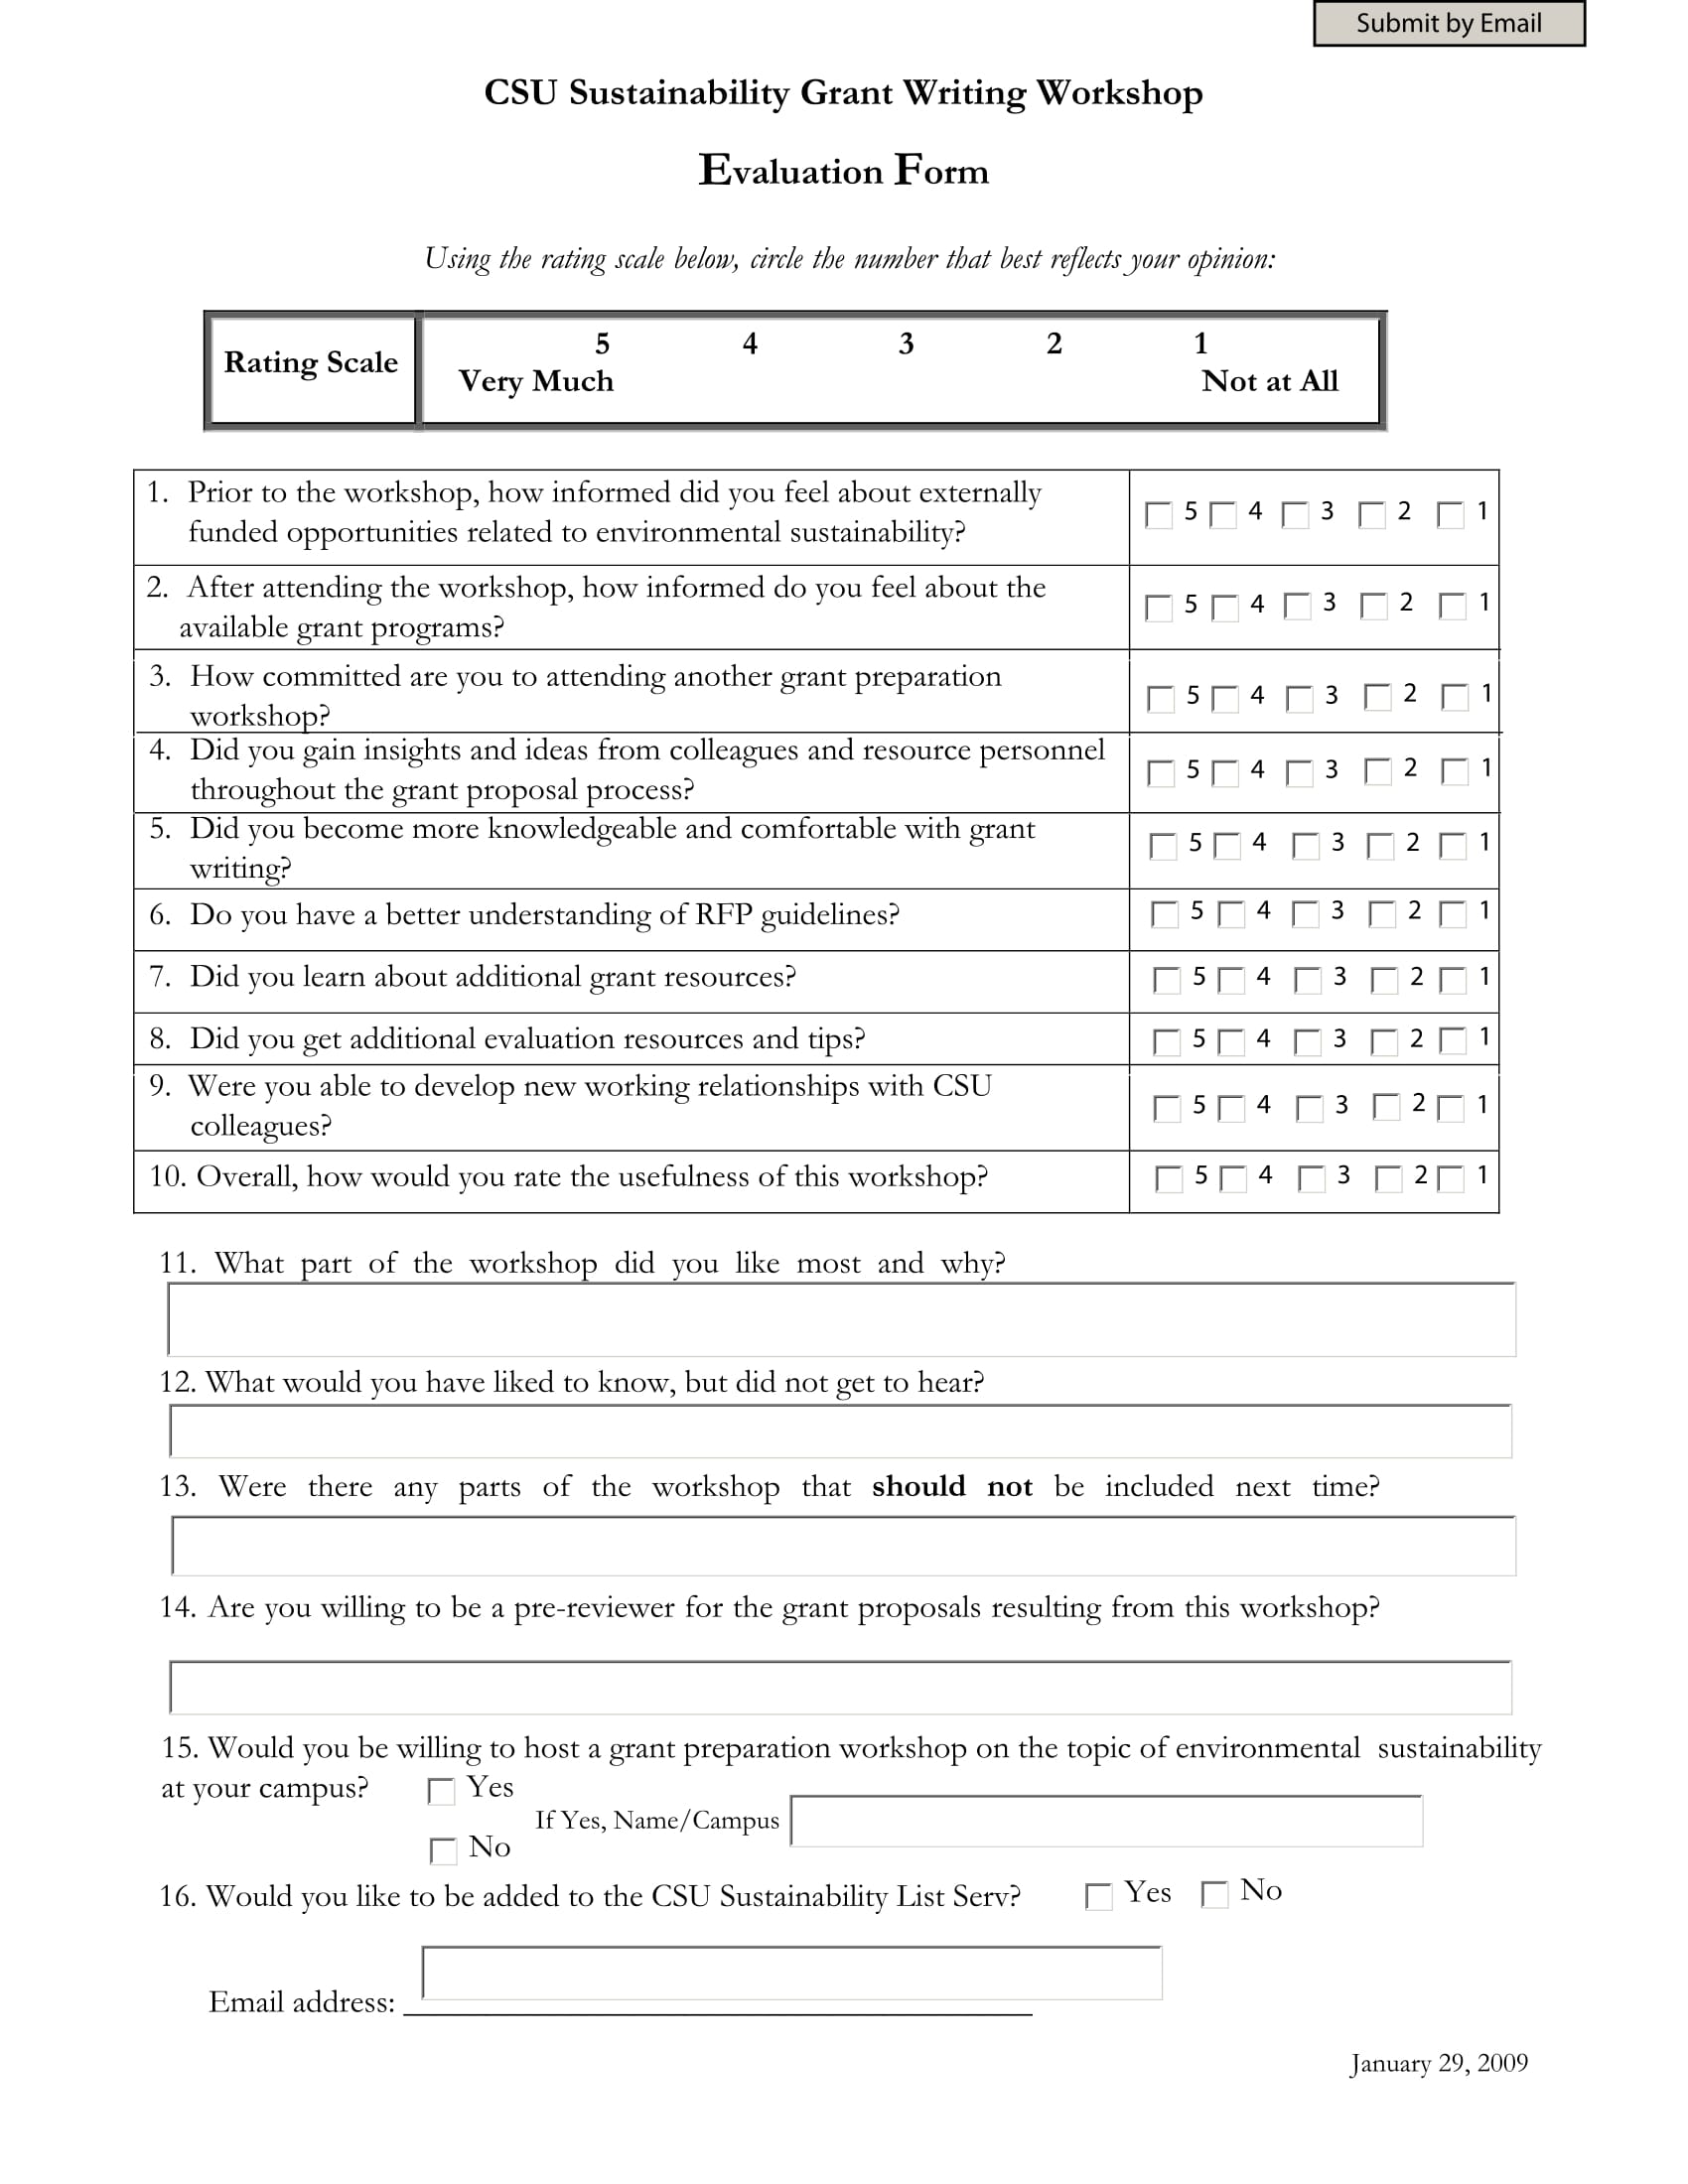 grant workshop evaluation form 1